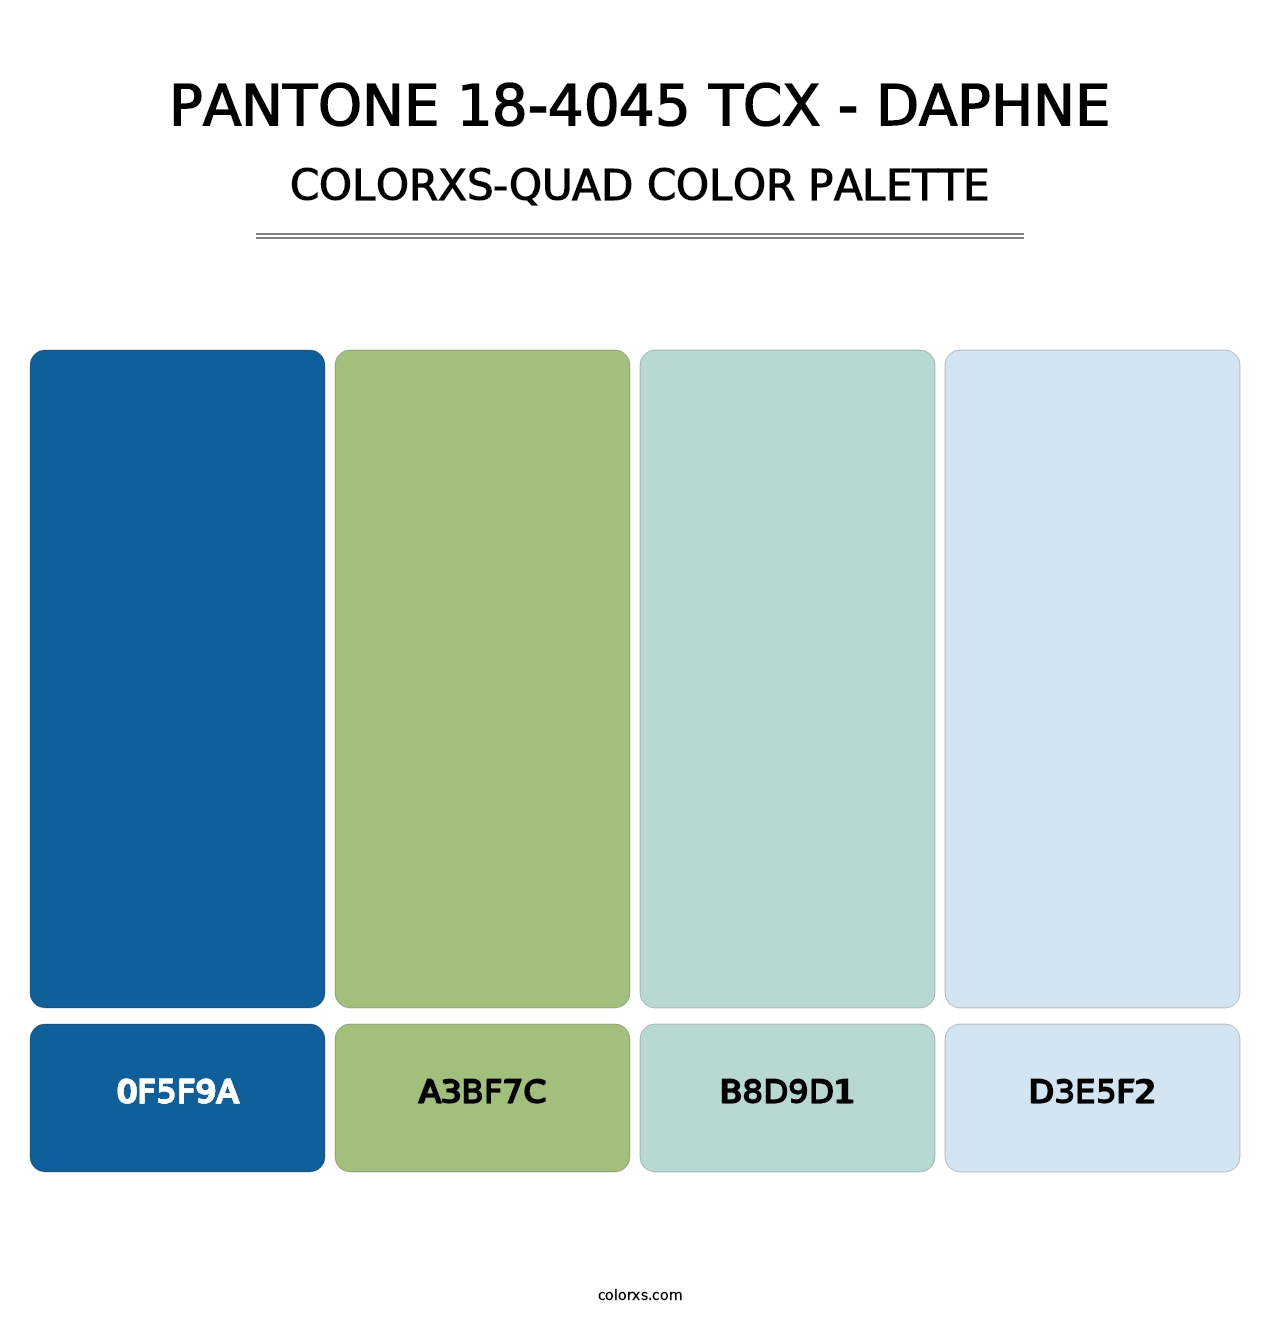 PANTONE 18-4045 TCX - Daphne - Colorxs Quad Palette